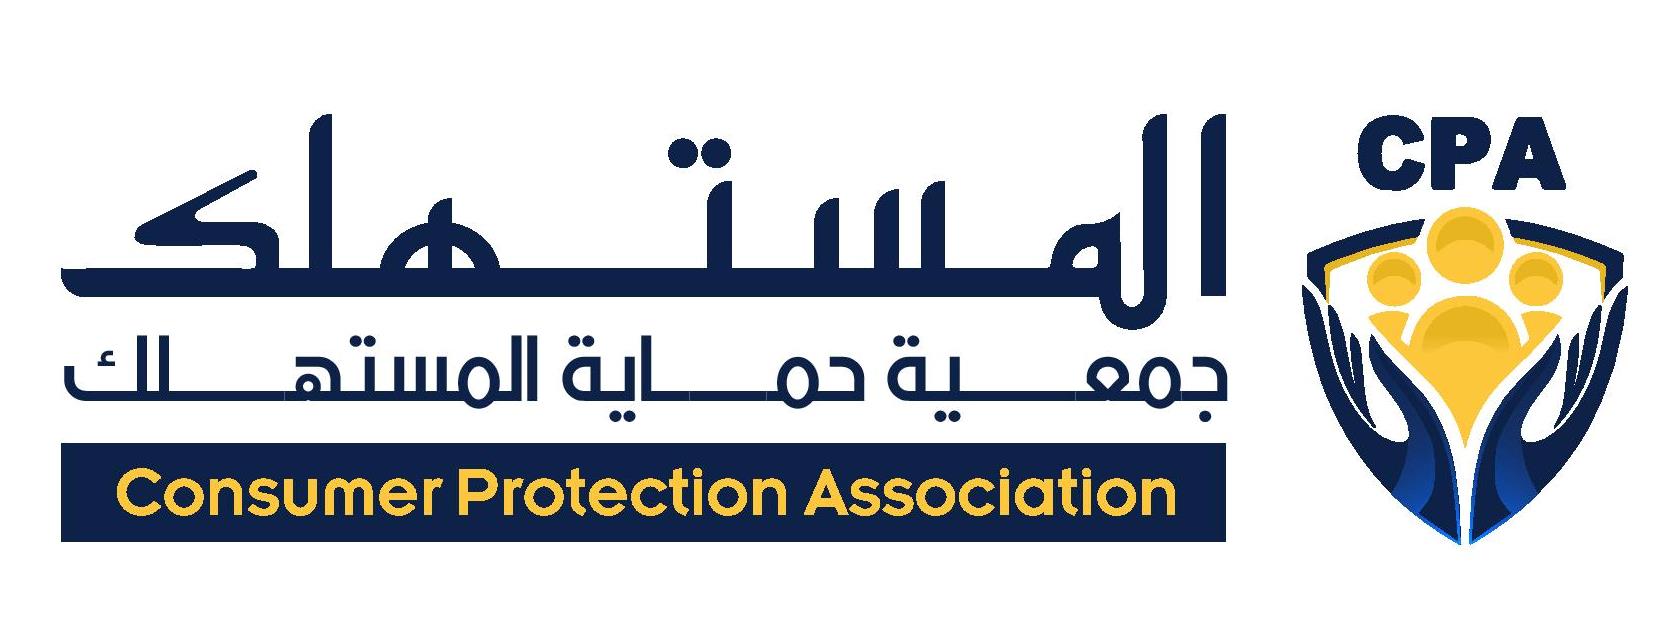 معلومات عن جمعية حقوق المستهلك بالكويت